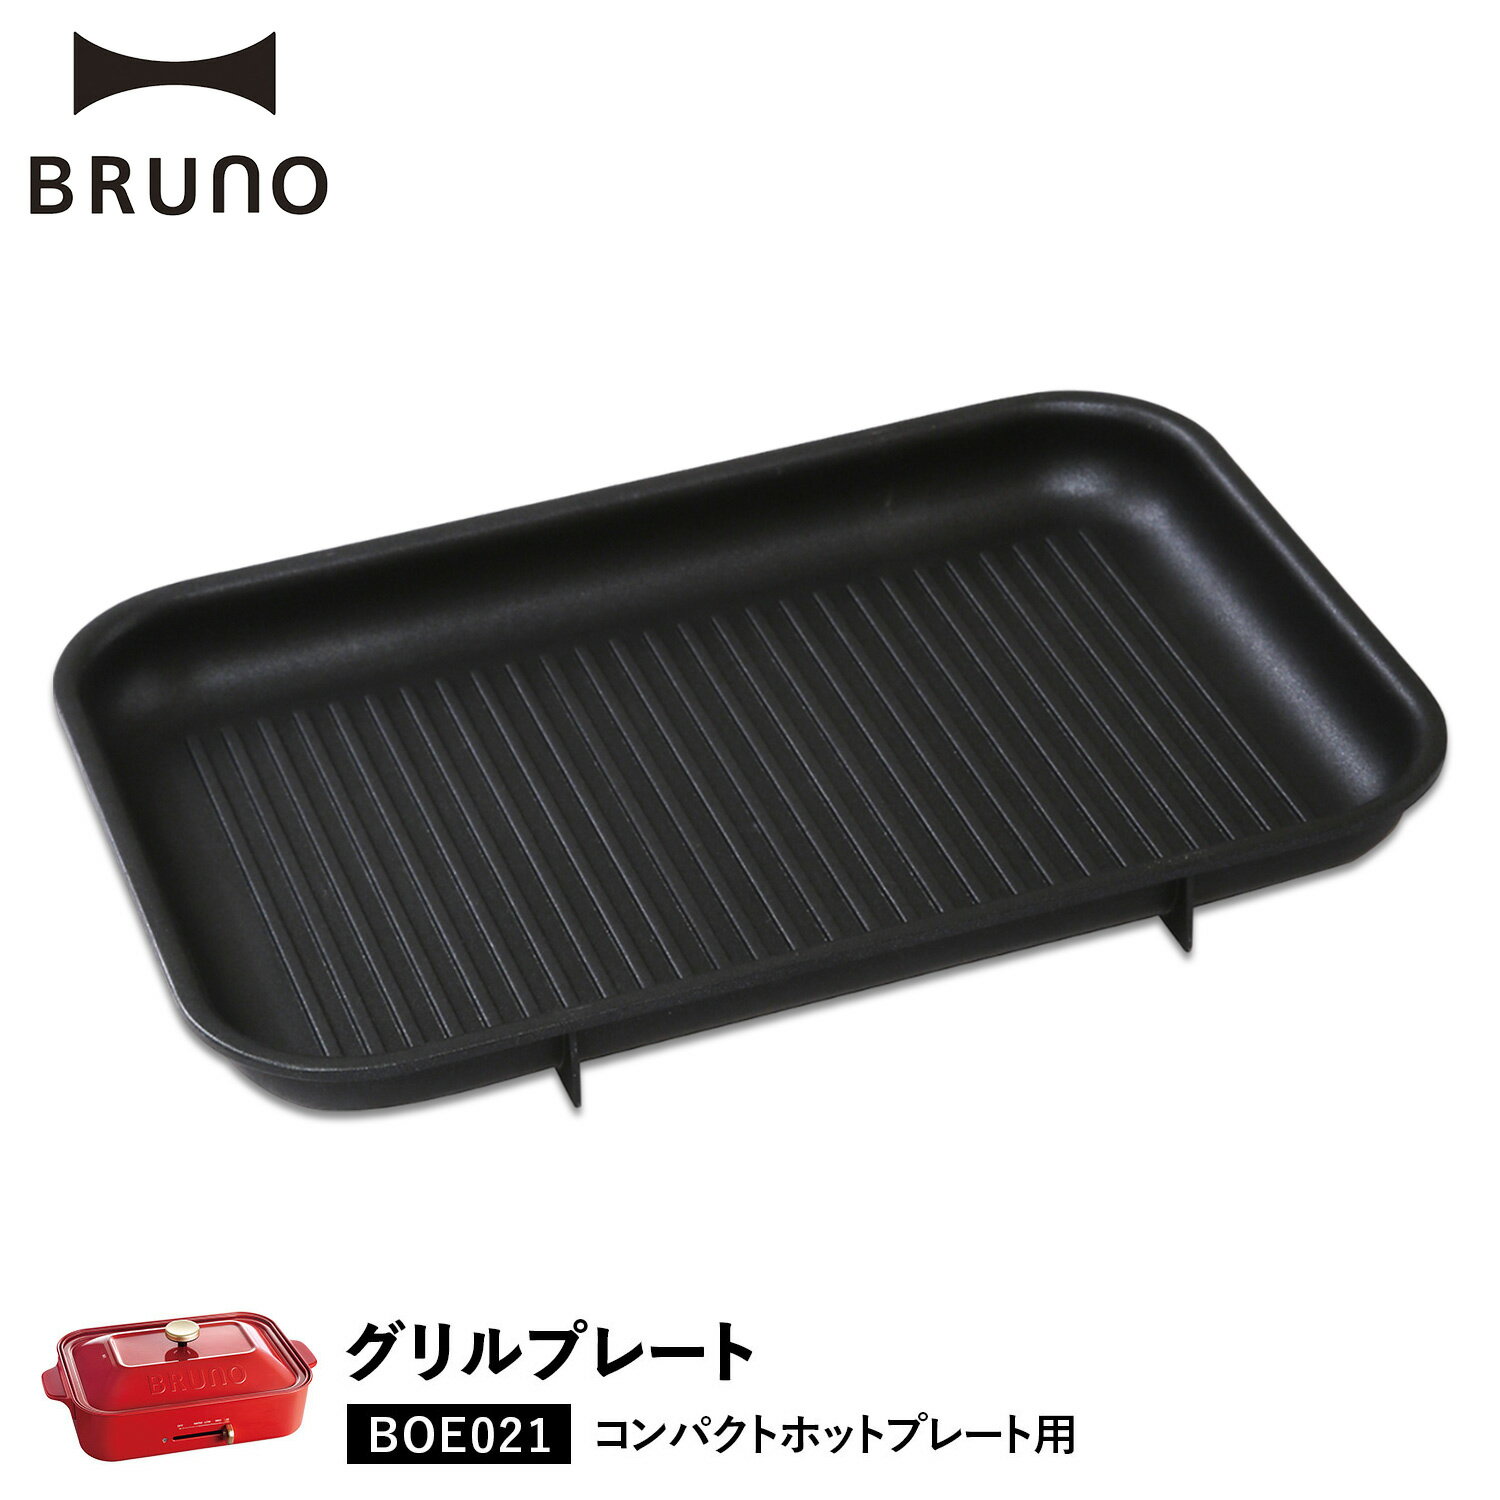 BRUNO BOE021-GRILL ブルーノ ホットプレート 焼肉 コンパクトホットプレート用 オプション プレート 小型 小さい 料理 パーティ キッチン ブラック 黒